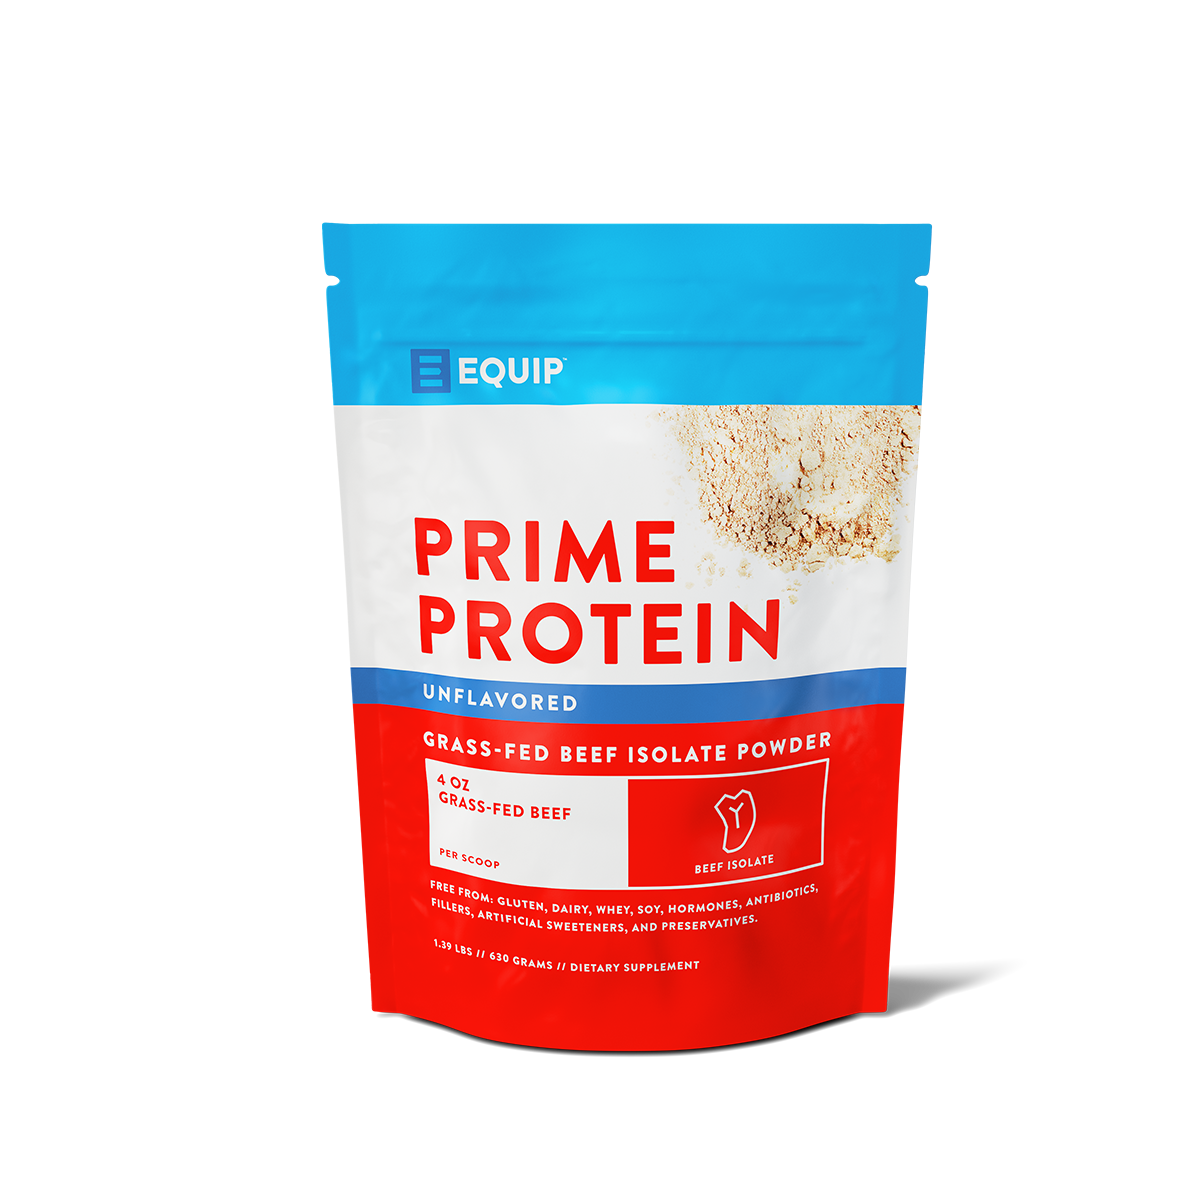 Beef Paleo Protein Powder: Keto Collagen Low Carb Ketogenic Diet Supplement, Brown